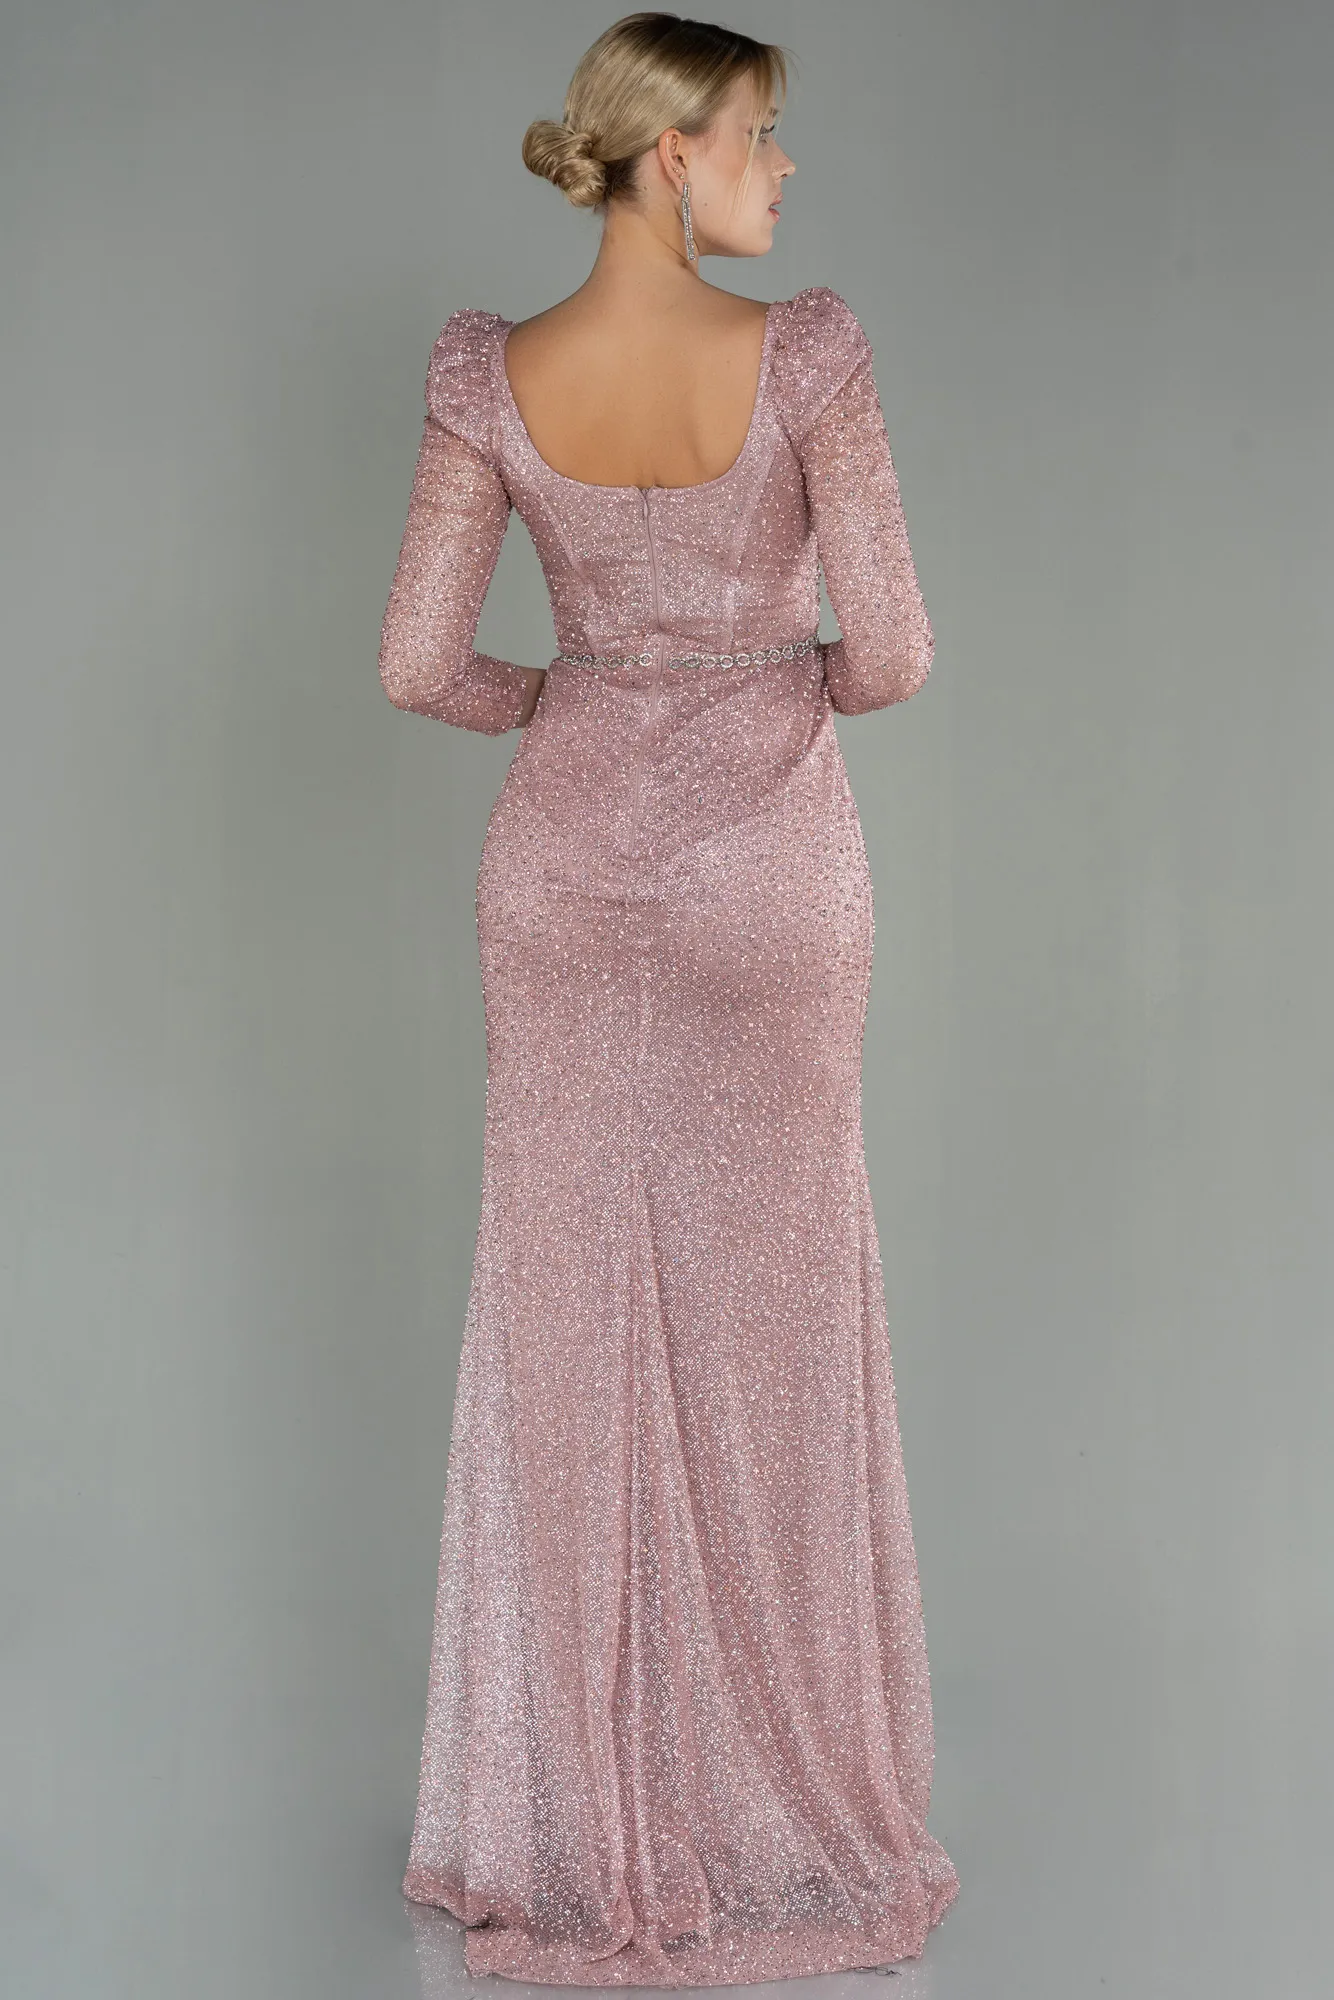 Powder Color-Long Evening Dress ABU2996